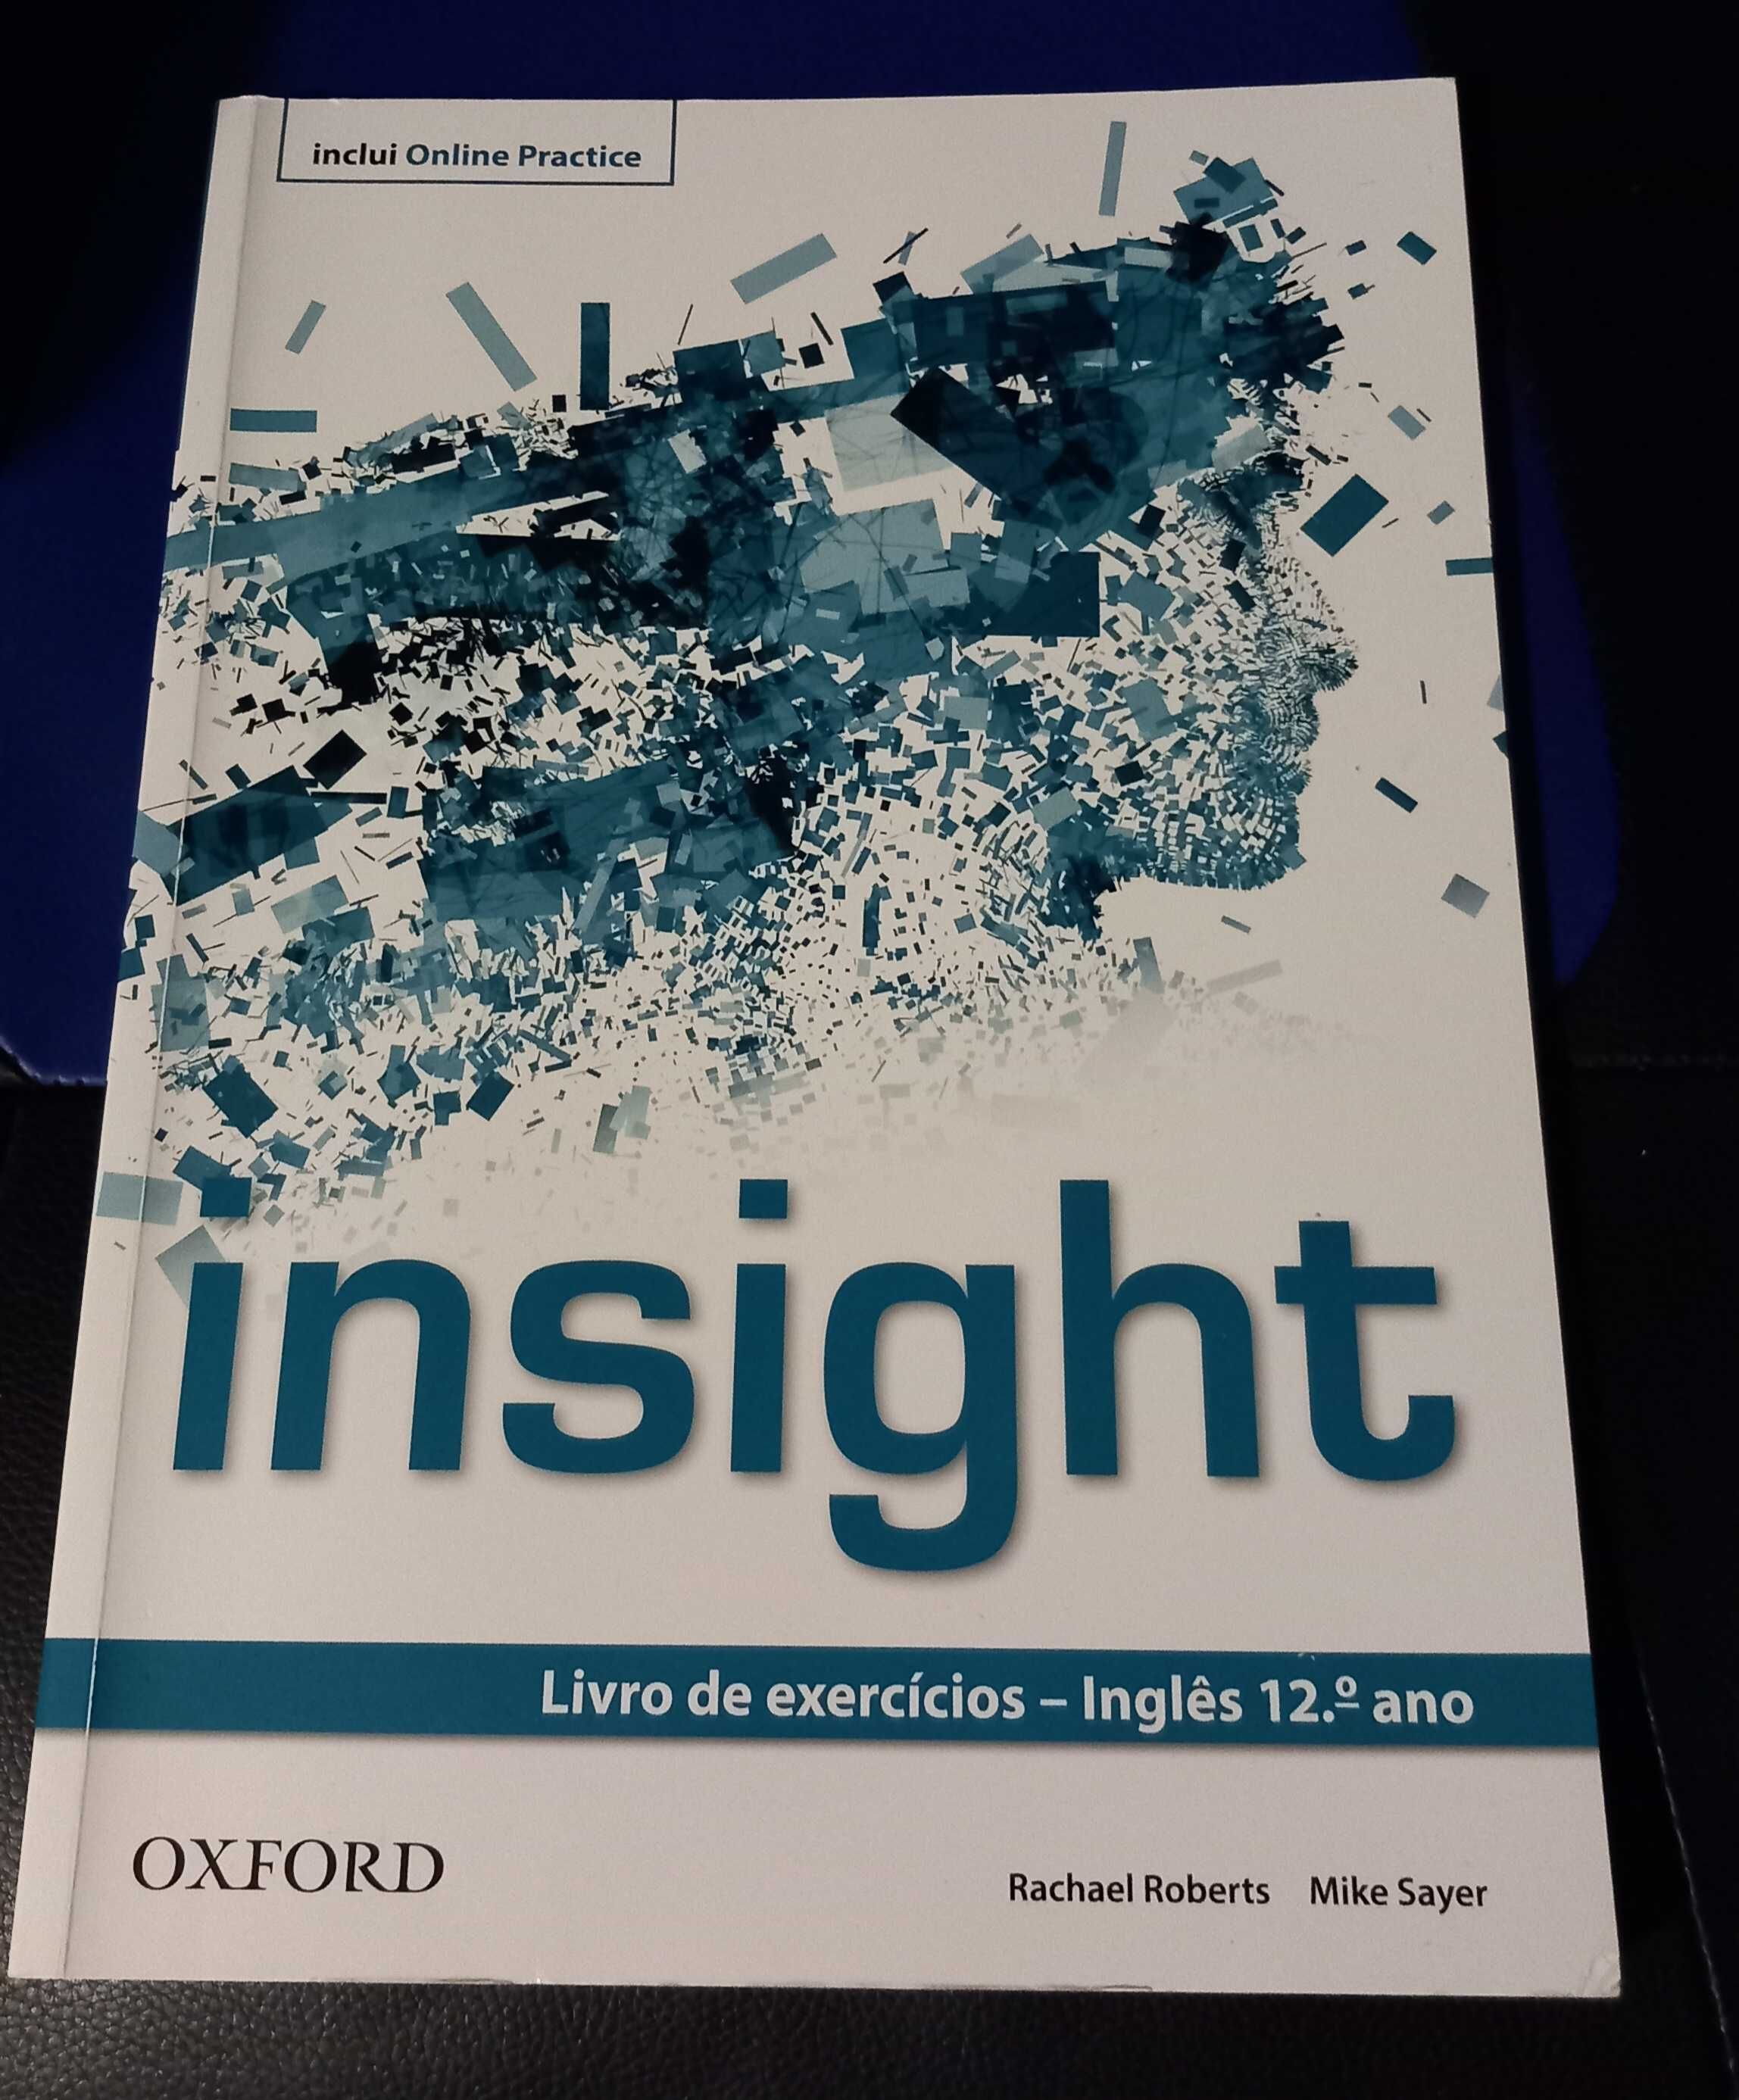 Livro de Exercícios novo - Inglês 12º ano "Insight" - Oxford